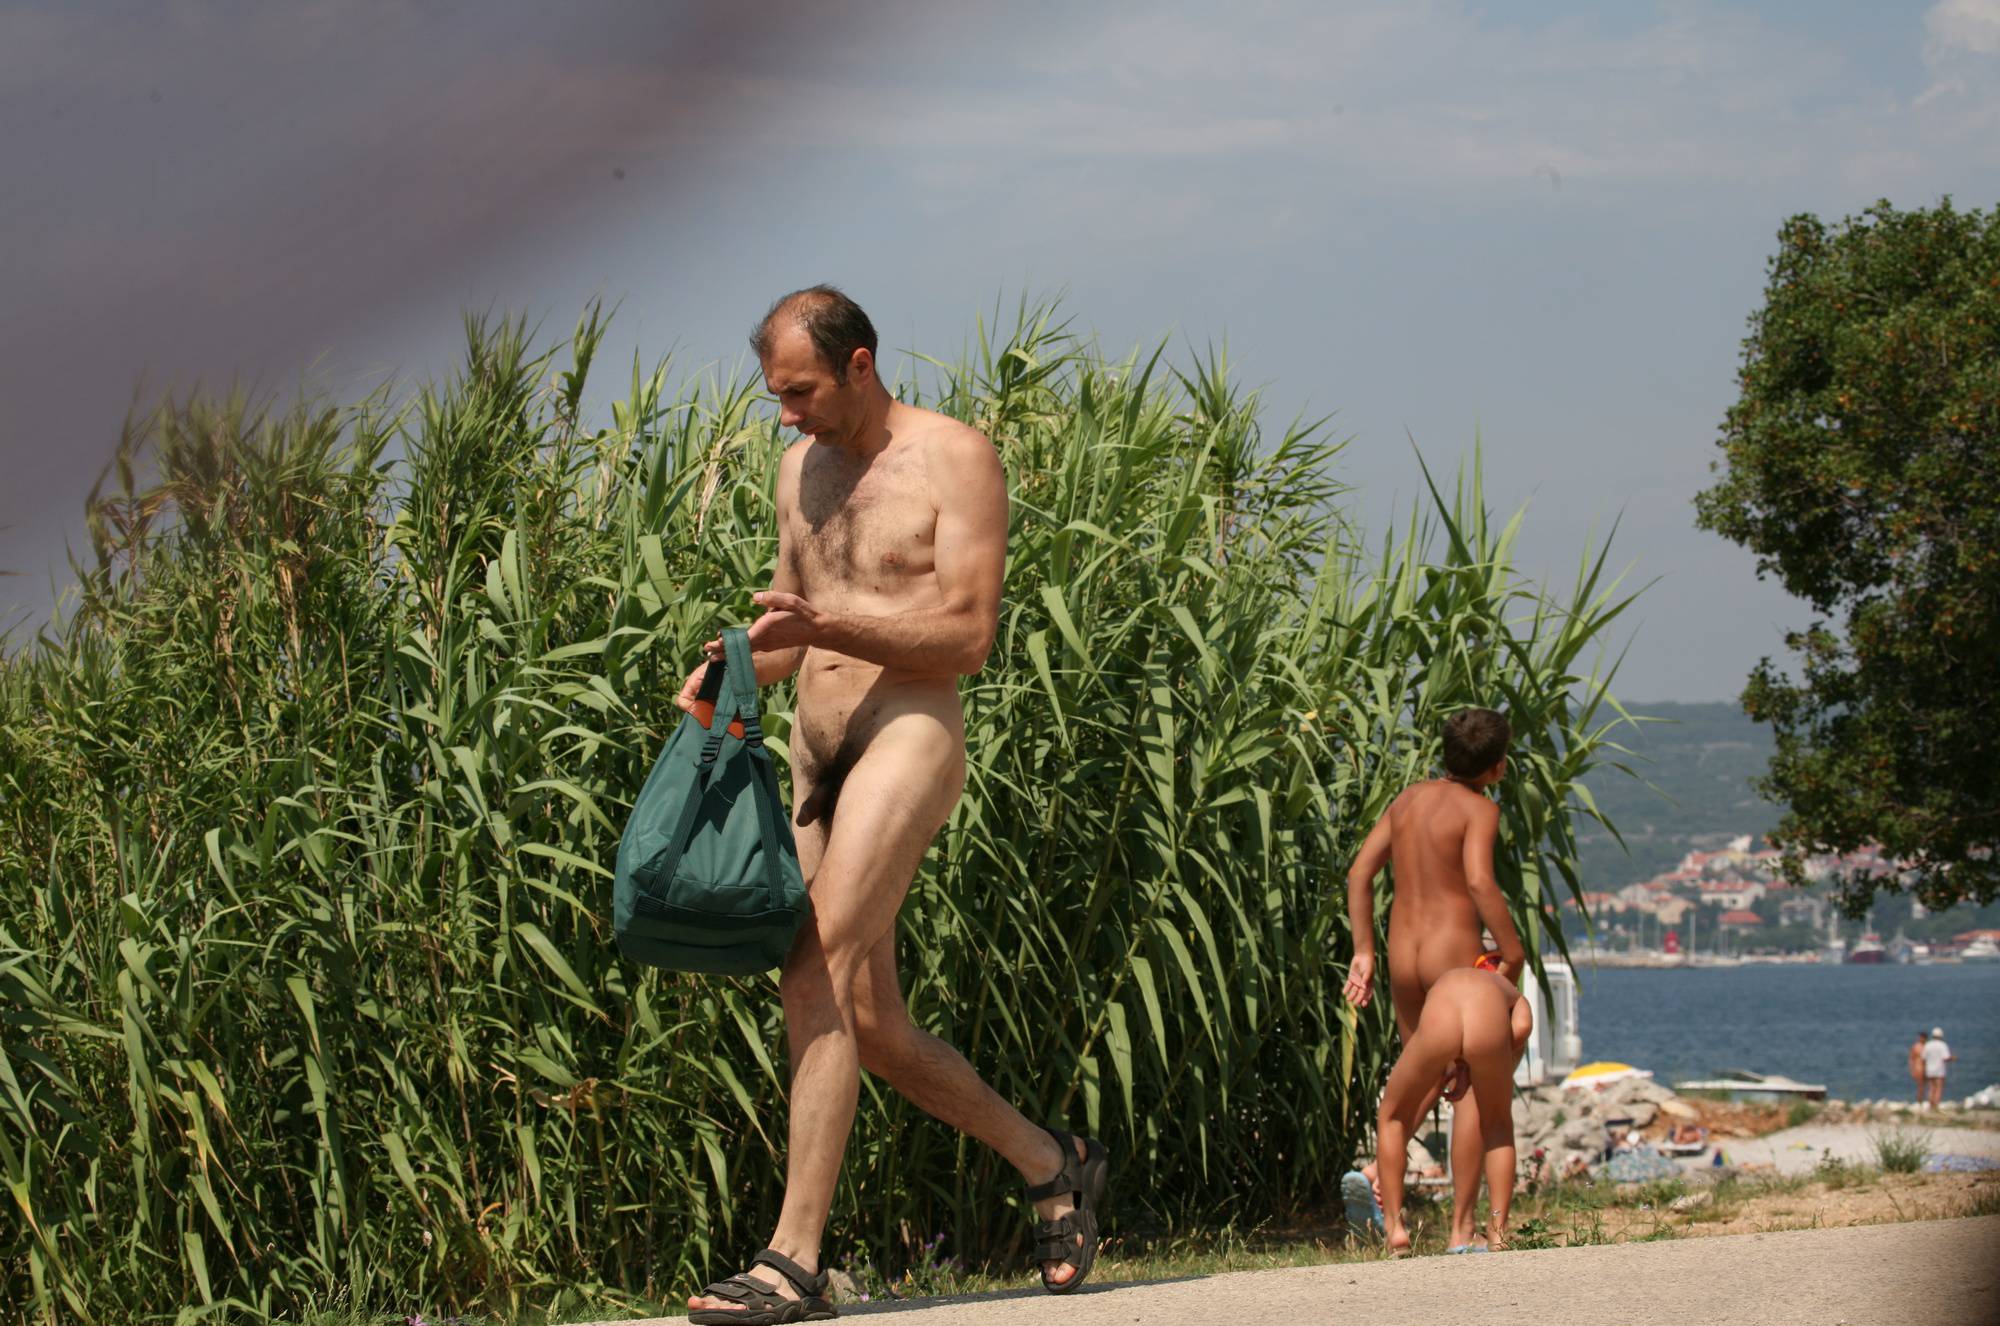 Nudist Photos Bondi Beach-Park Pass By - 2